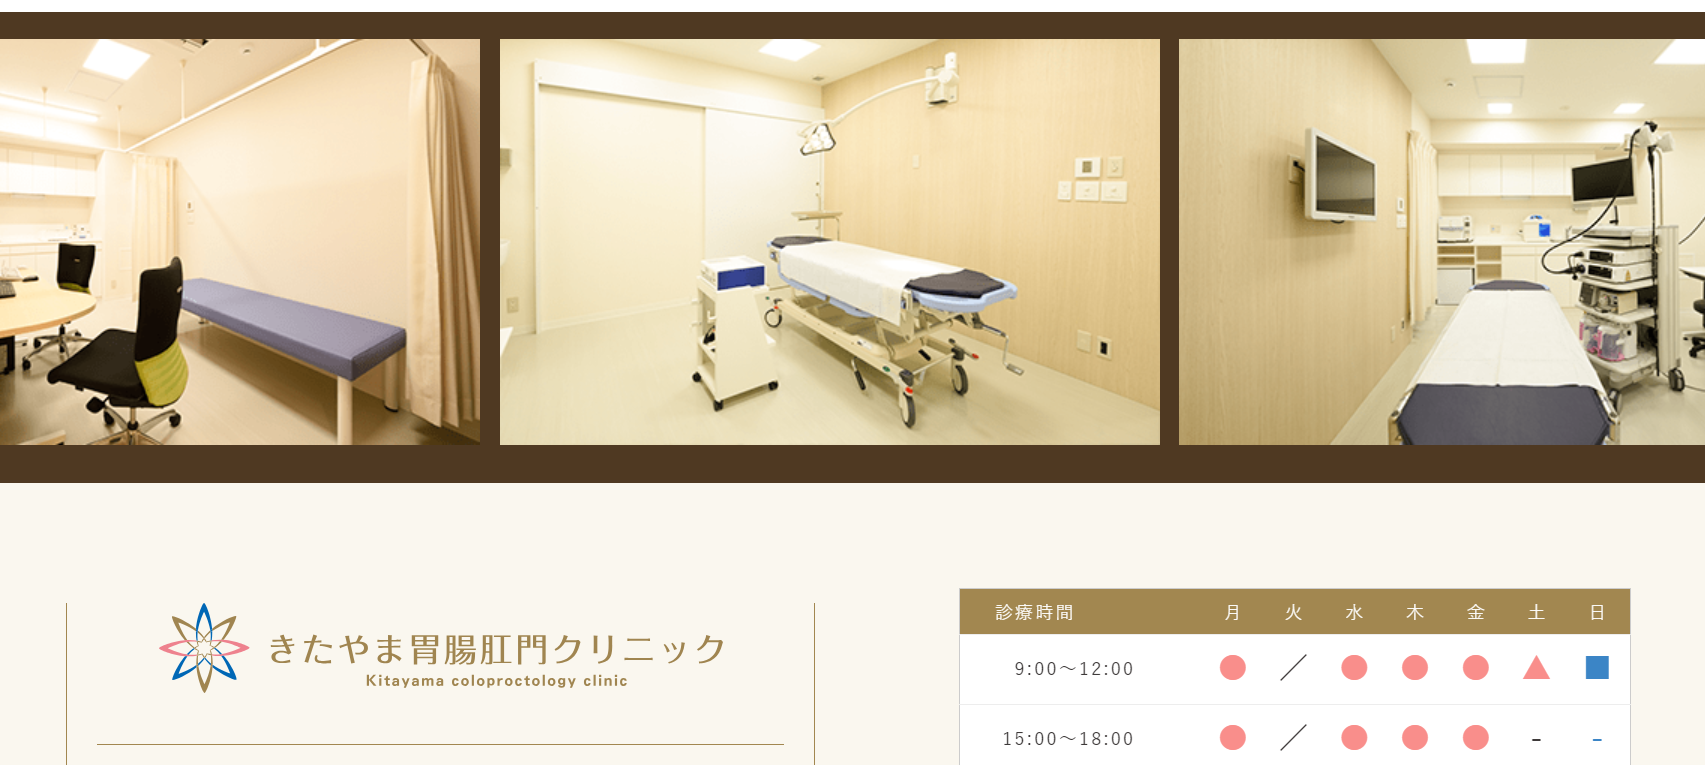 東京都で評判の肛門科クリニックおすすめ10選 きたやま胃腸肛門クリニック